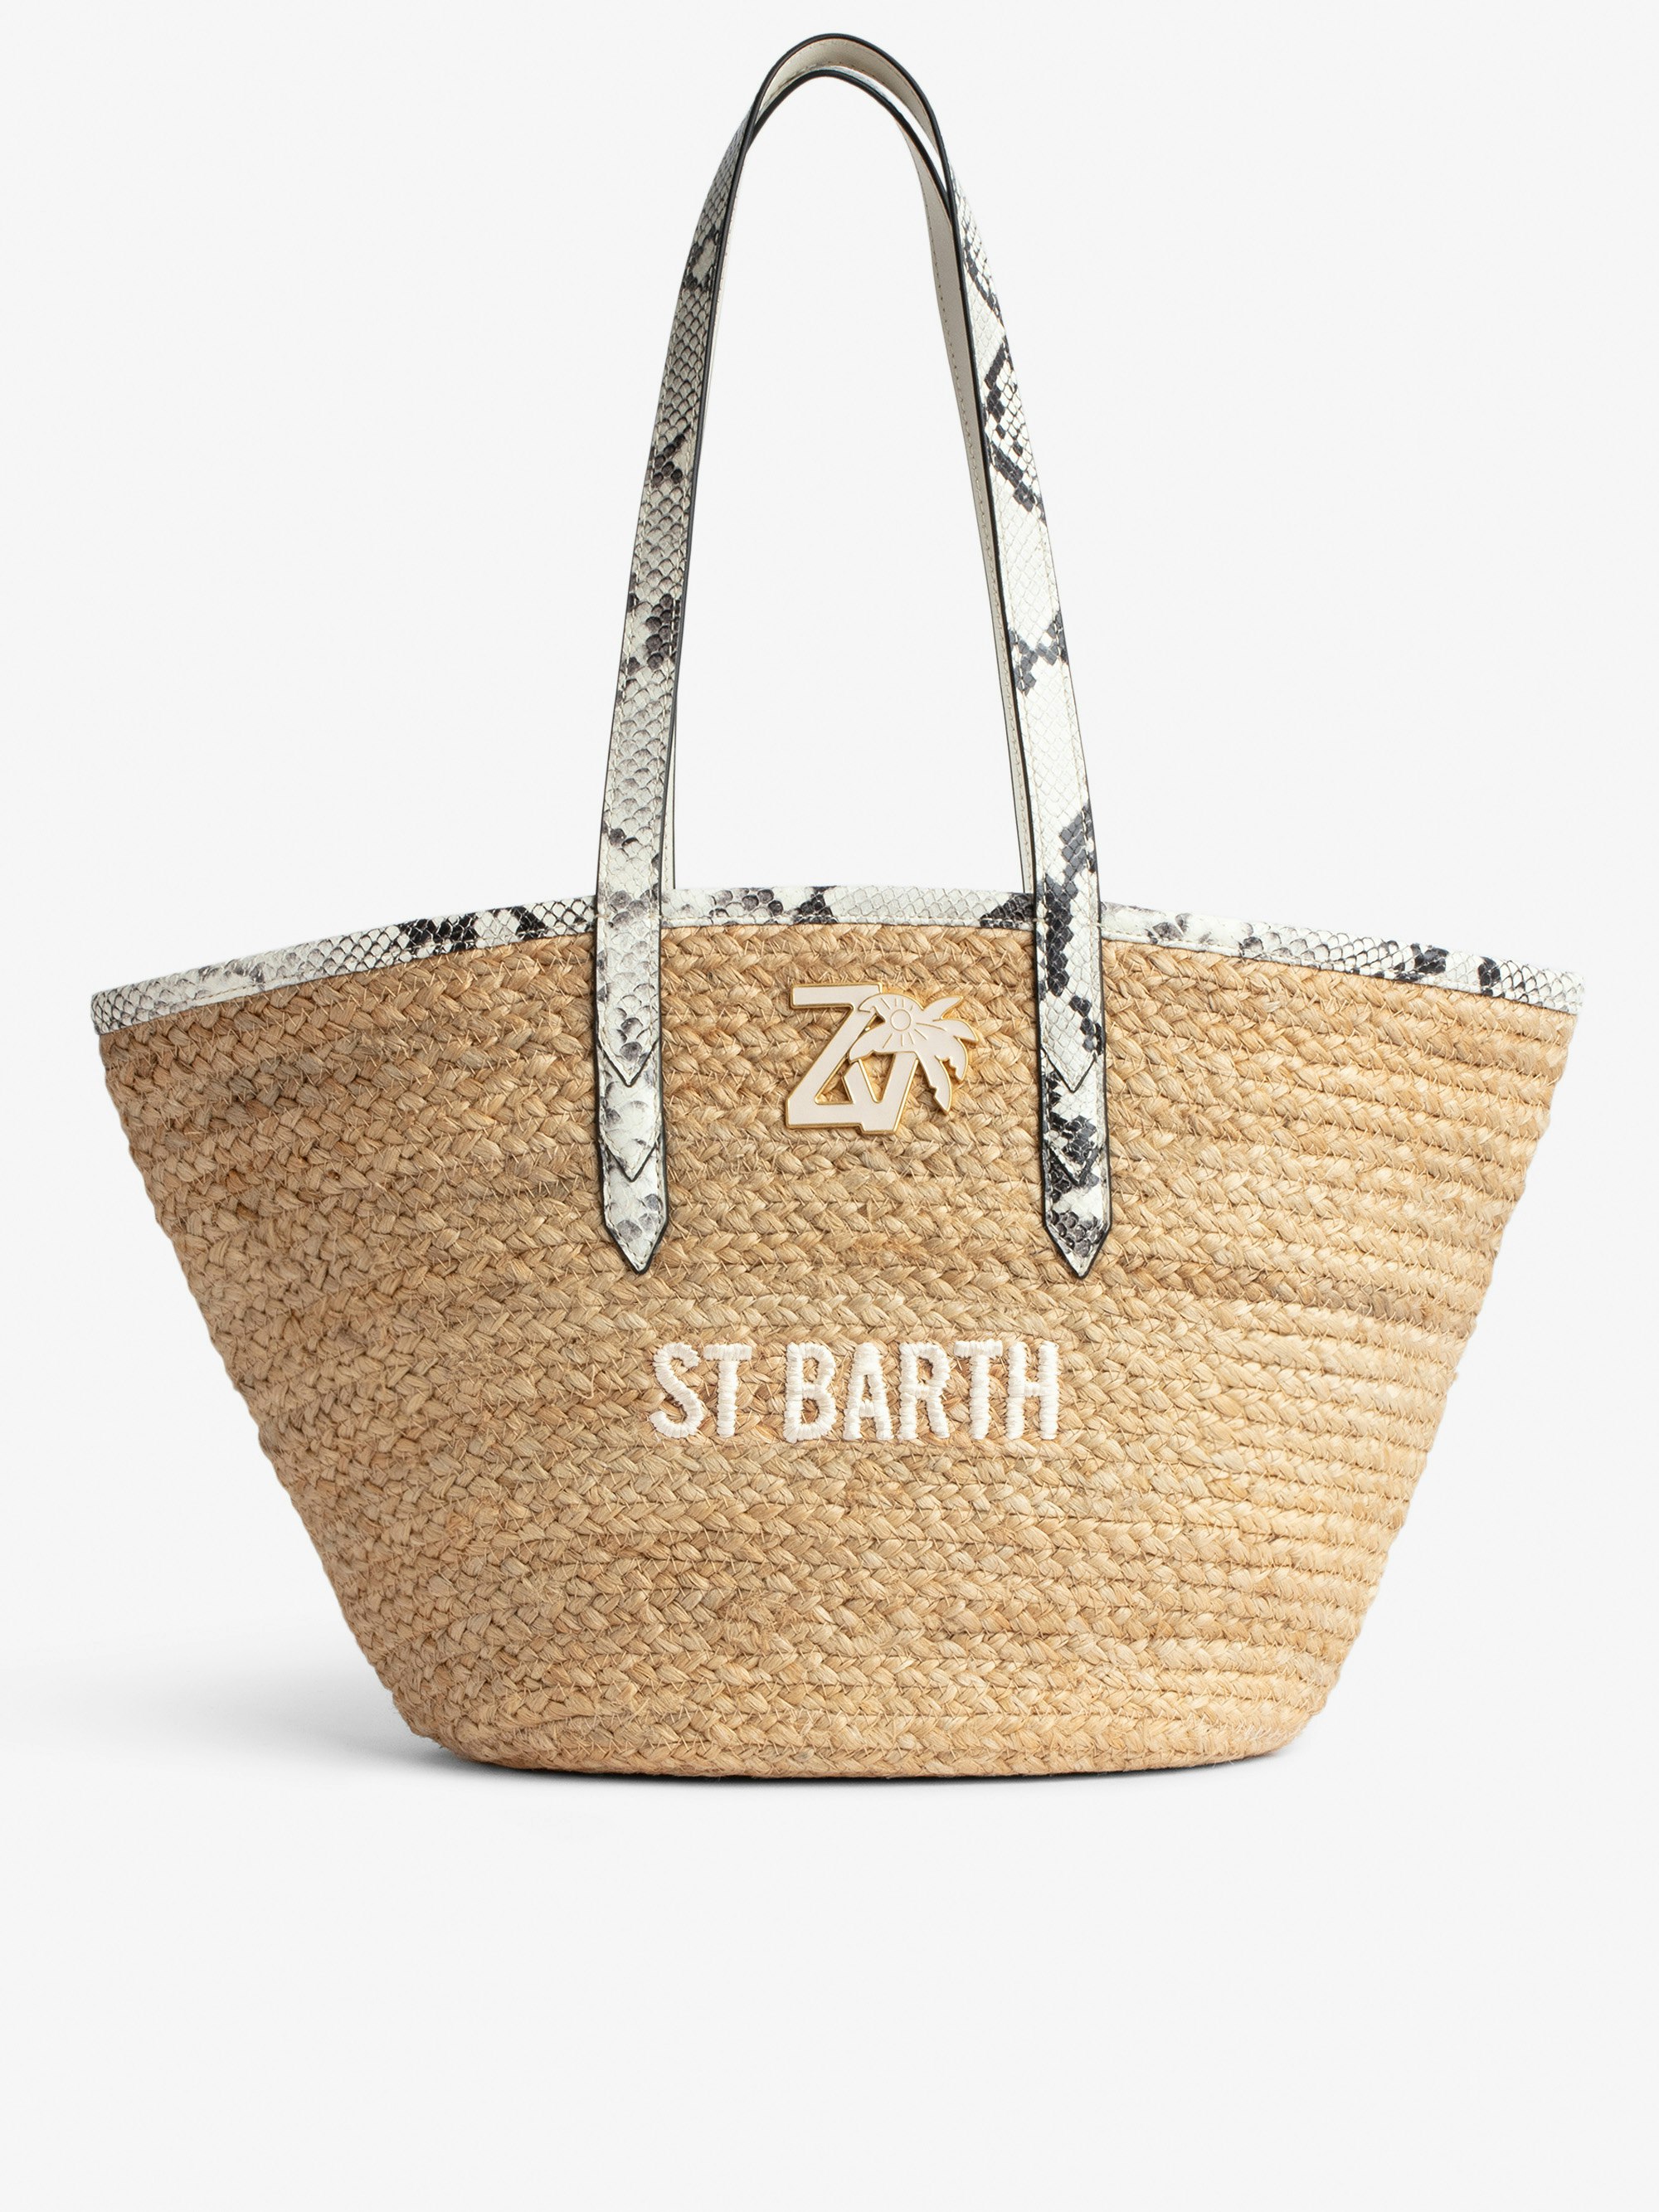 Bolso Le Beach Bag - Bolso de paja con asas de cuero color crudo efecto pitón, bordado «St Barth» y con colgante ZV Mujer